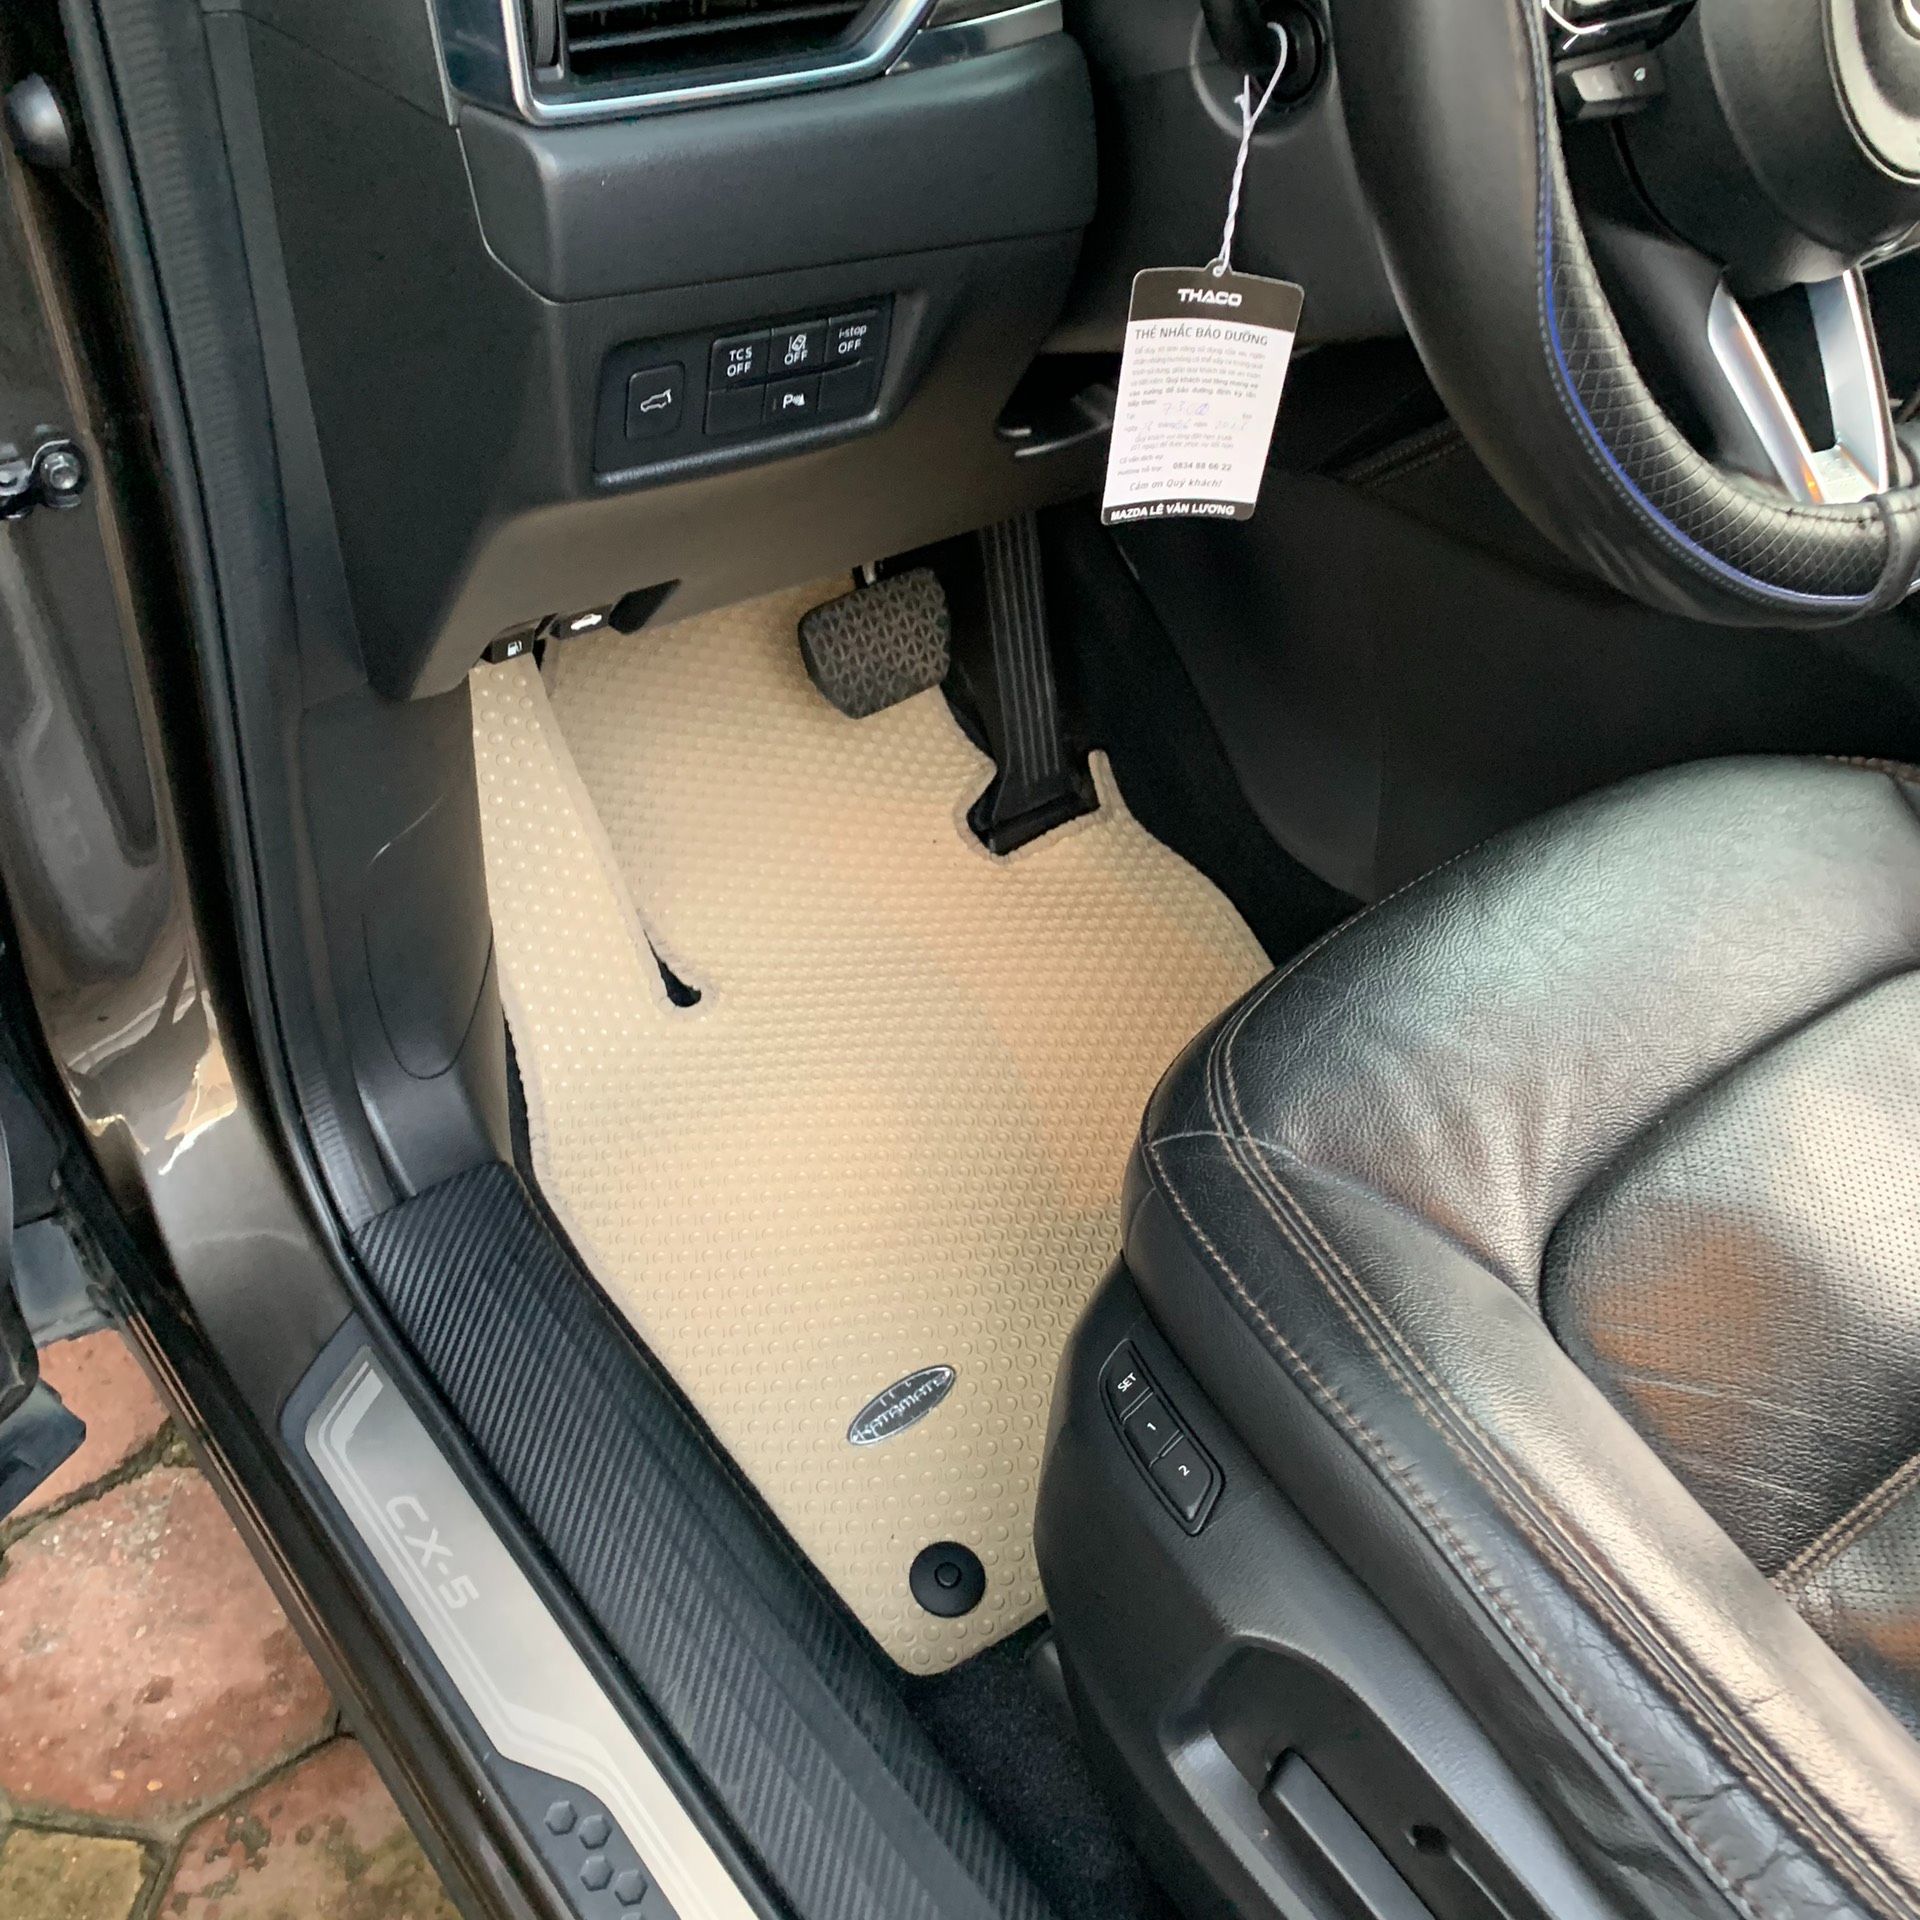 Thảm lót sàn KATA cho xe Mazda CX5- Hàng chính hãng không mùi, chống thấm